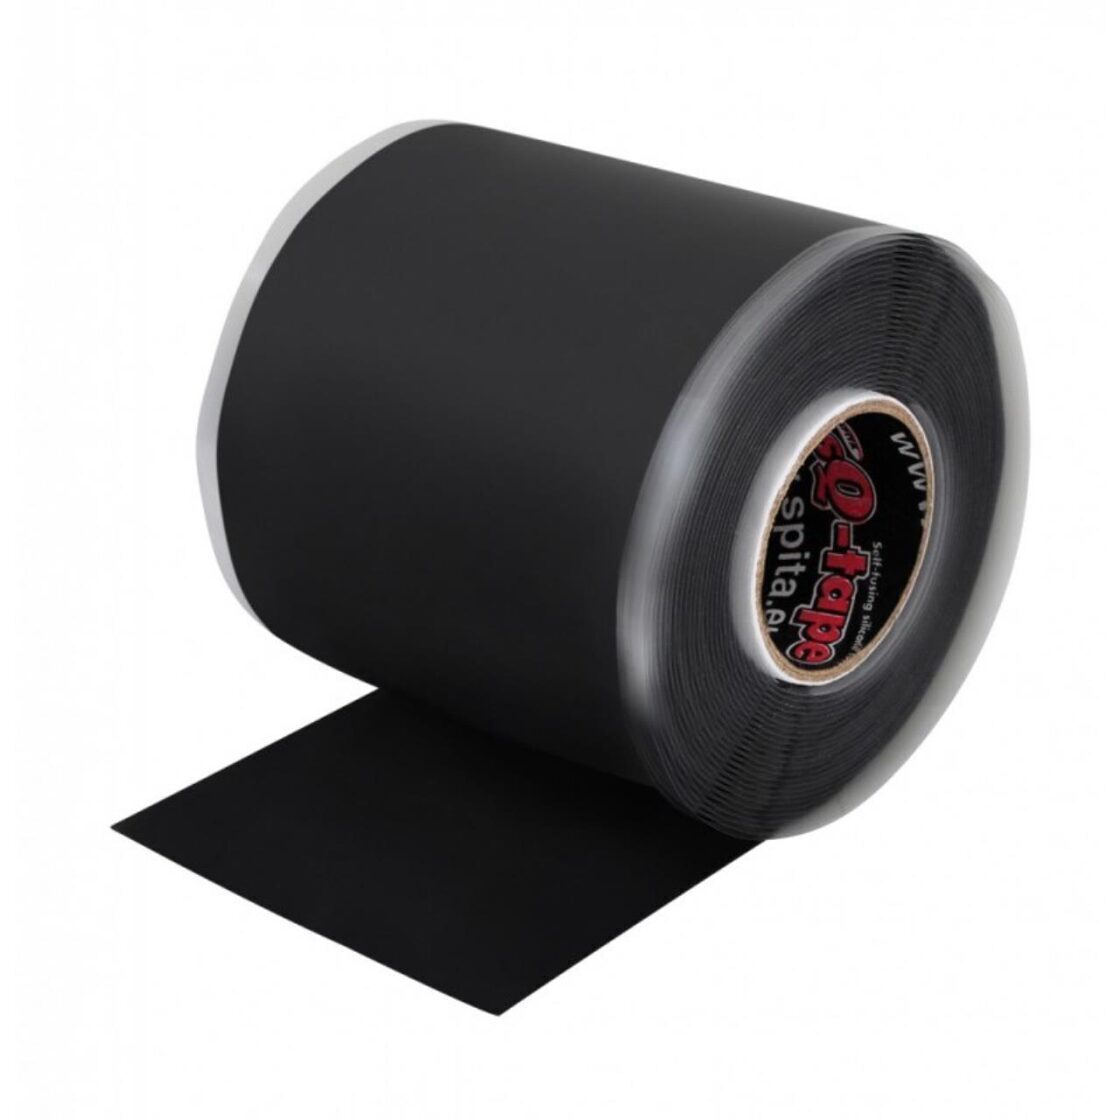 ResQ-Plast selbstklebender Verband 50mm breit schwarz